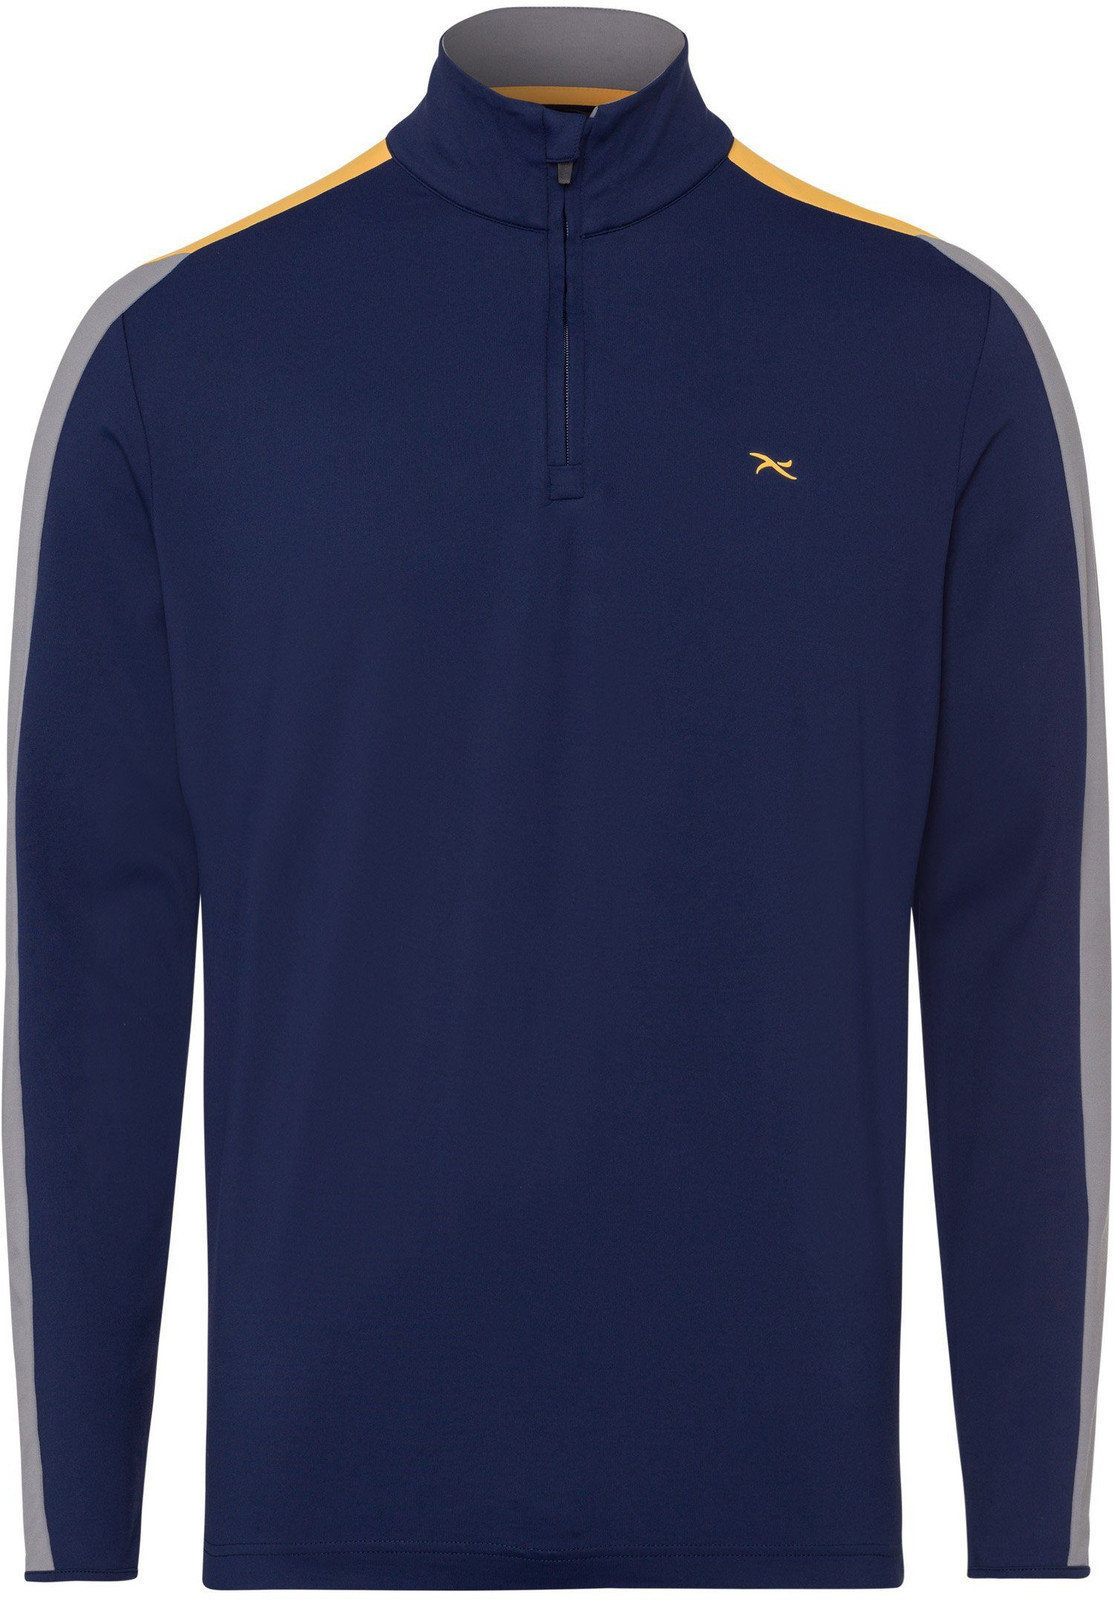 Polo-Shirt Brax Taro Langarm Herren Poloshirt Blue Navy S